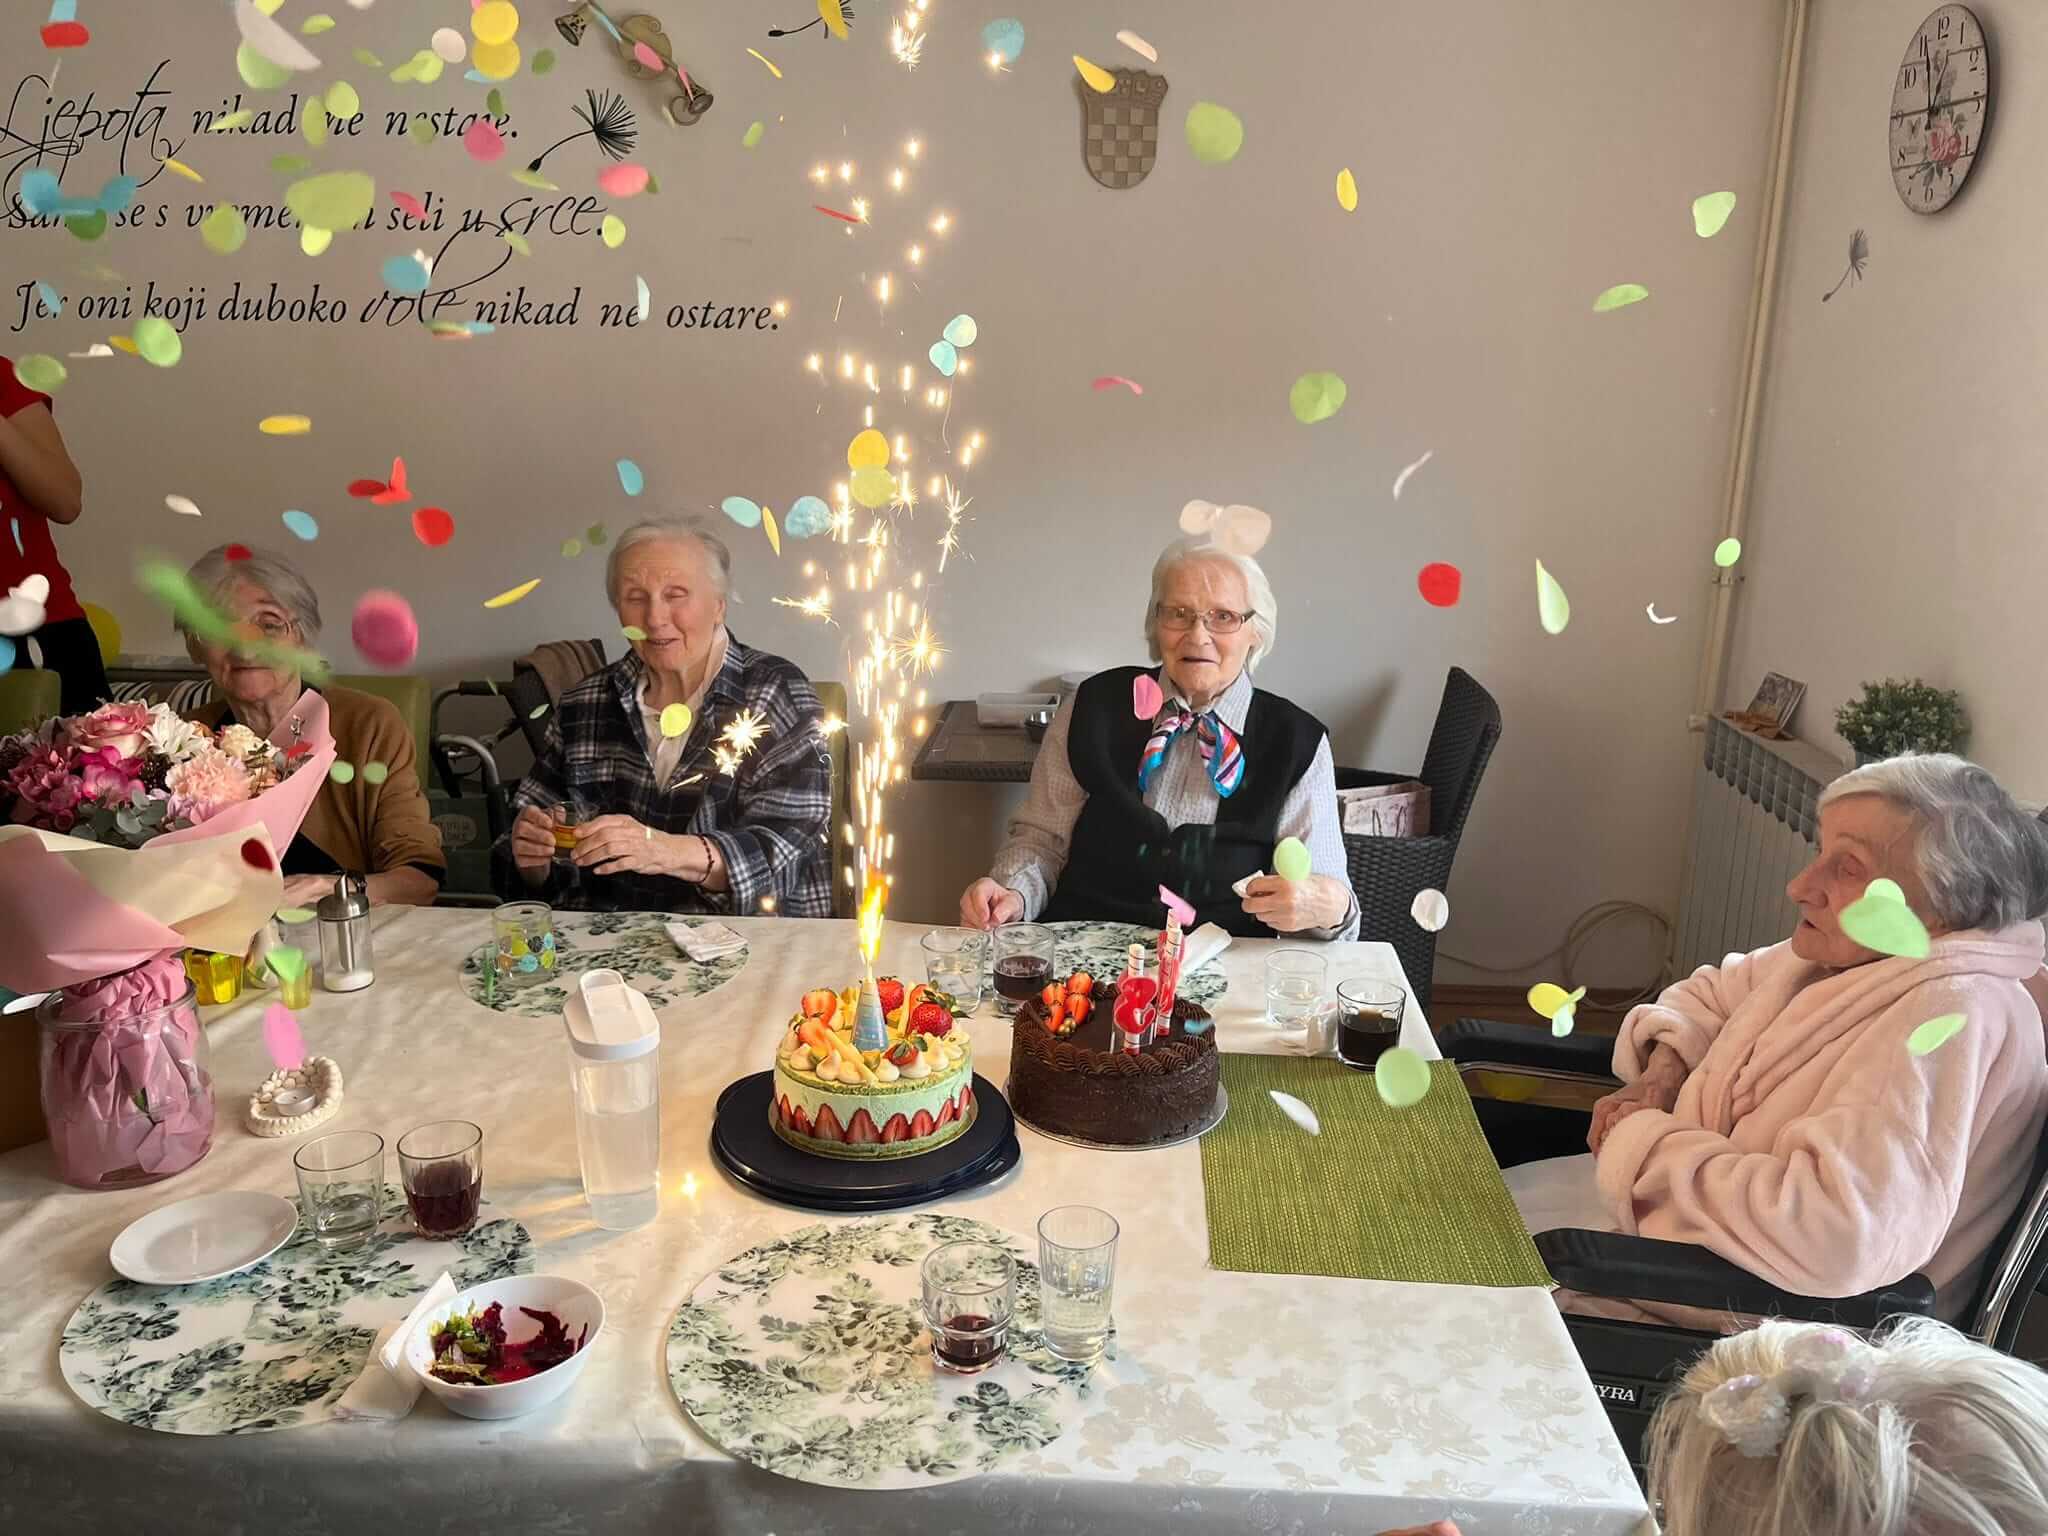 proslava rođendana četiri umirovljenice u domu za starije osobe s dvije torte na stolu, svjećicama koje gore i konfetima u zraku